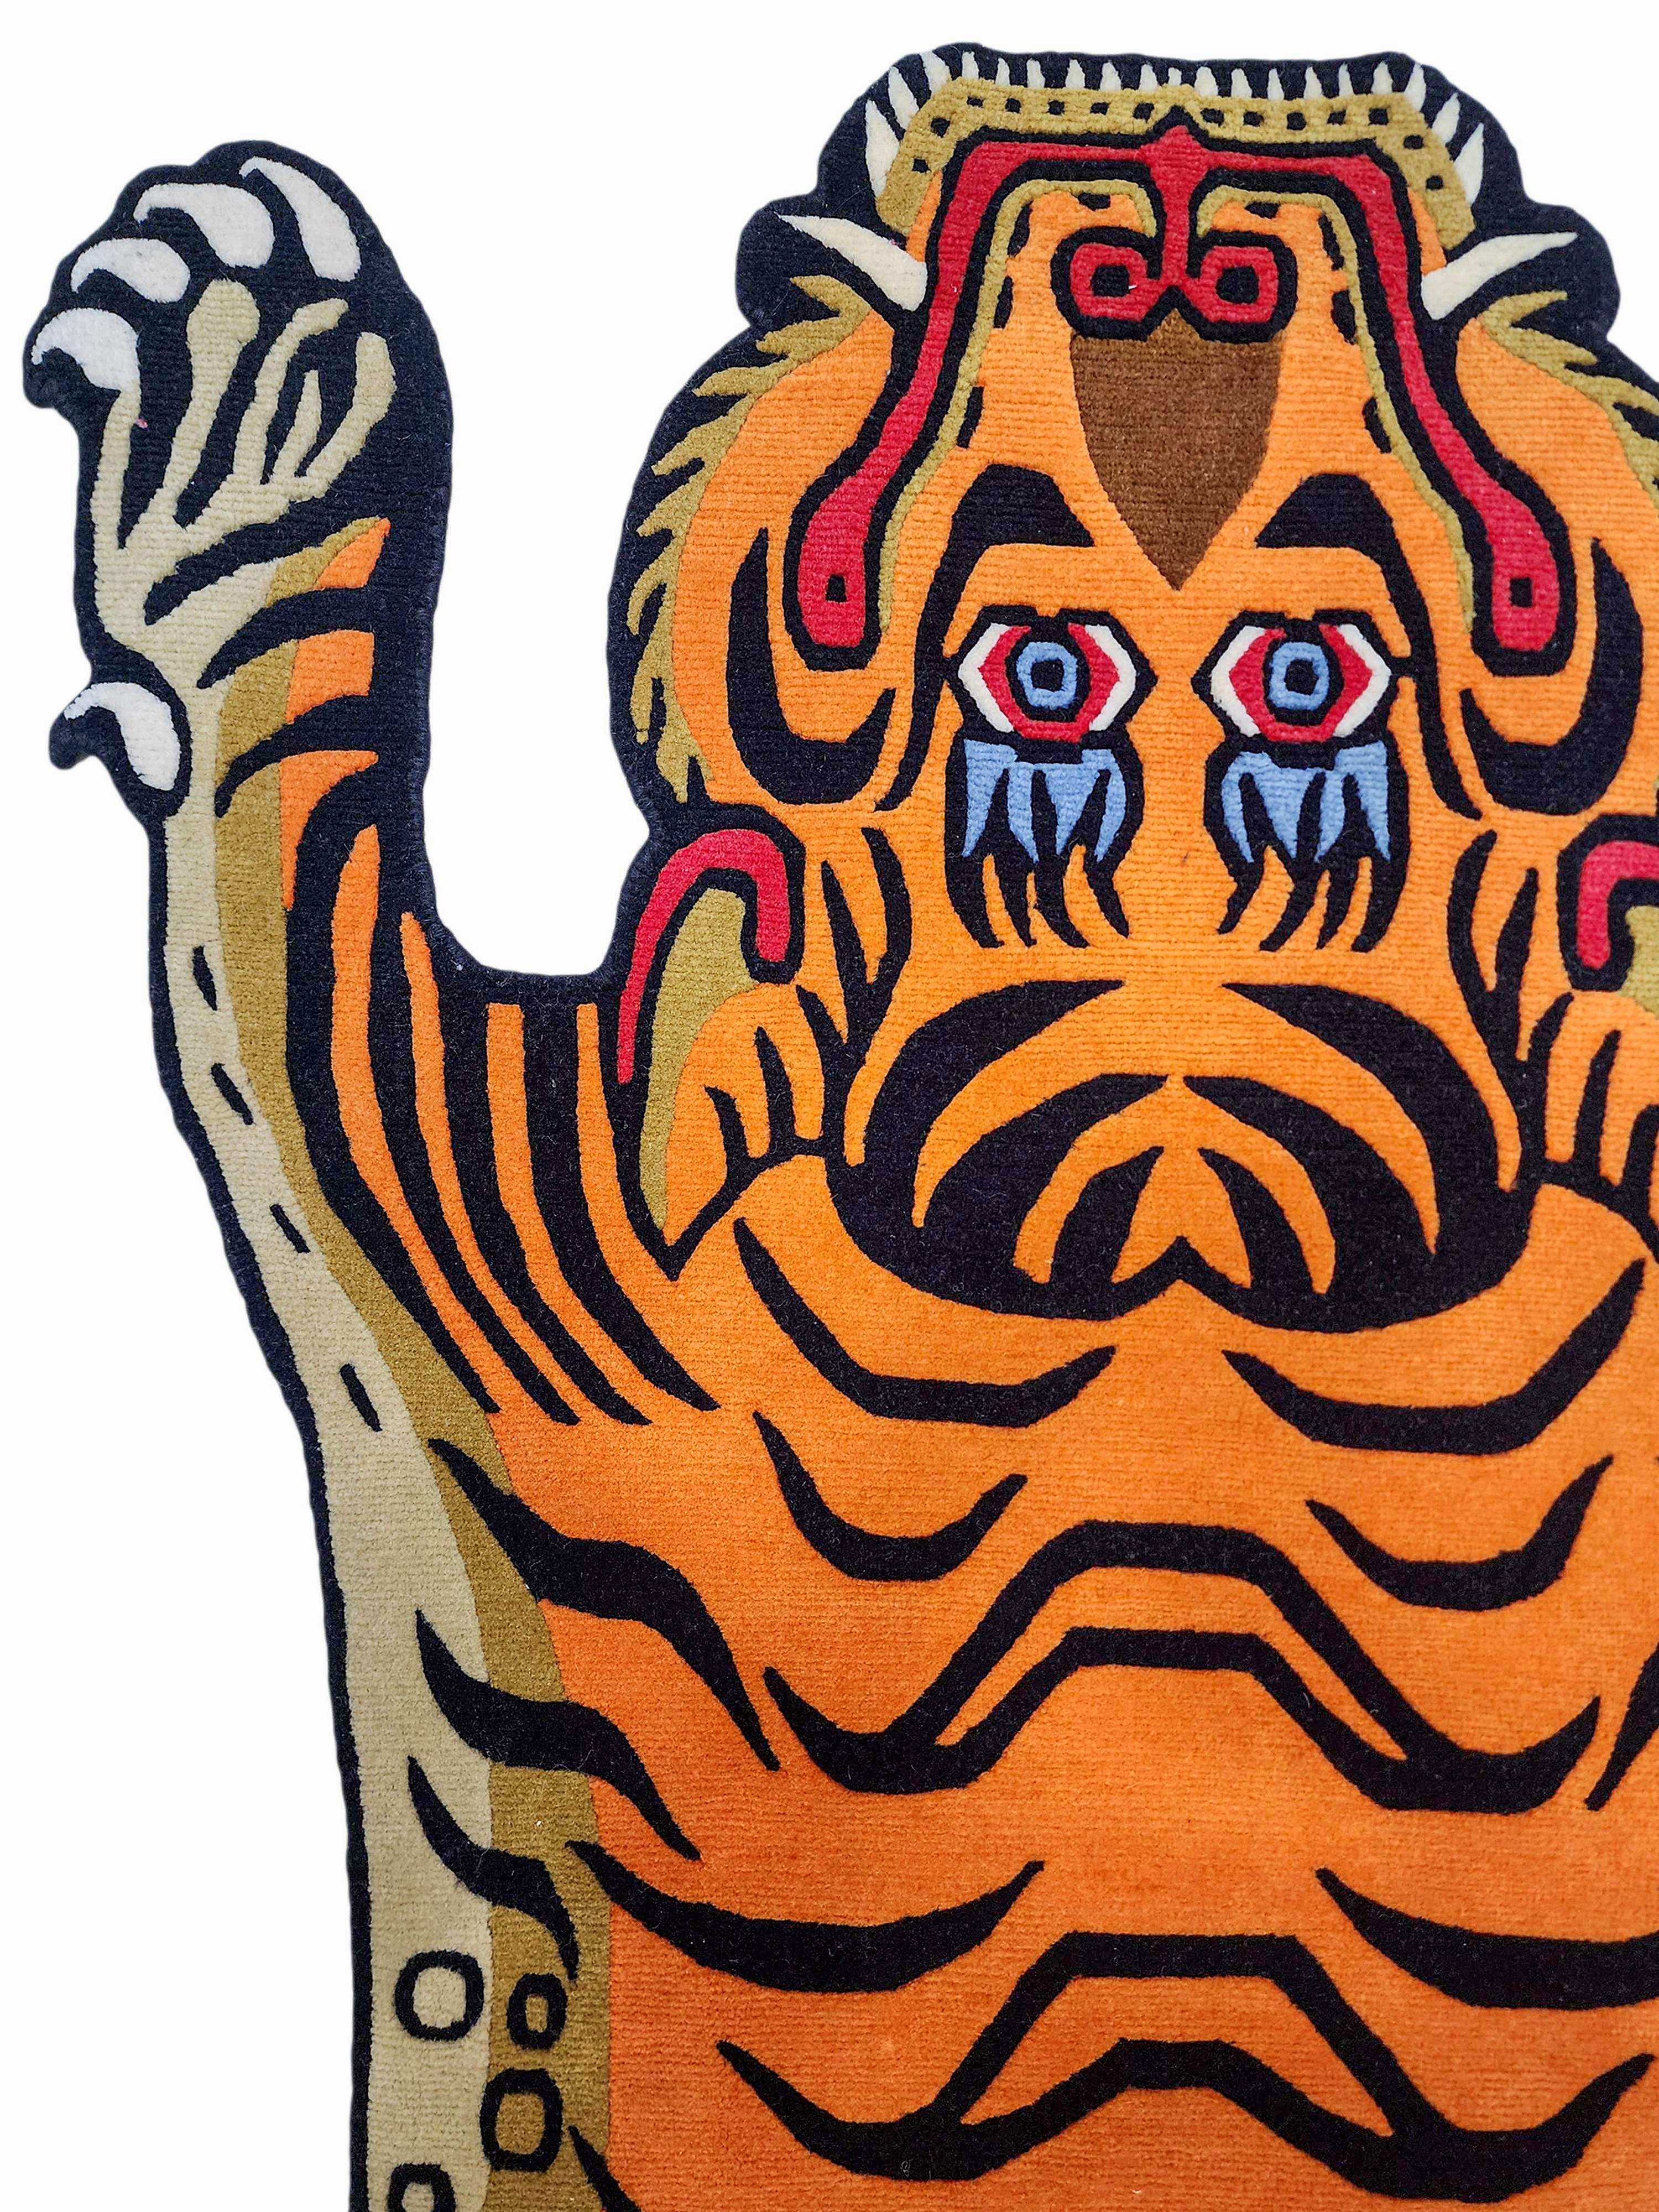 tiger Design Rug/carpet, Handwoven In Nepal, Orange Color, Large Size